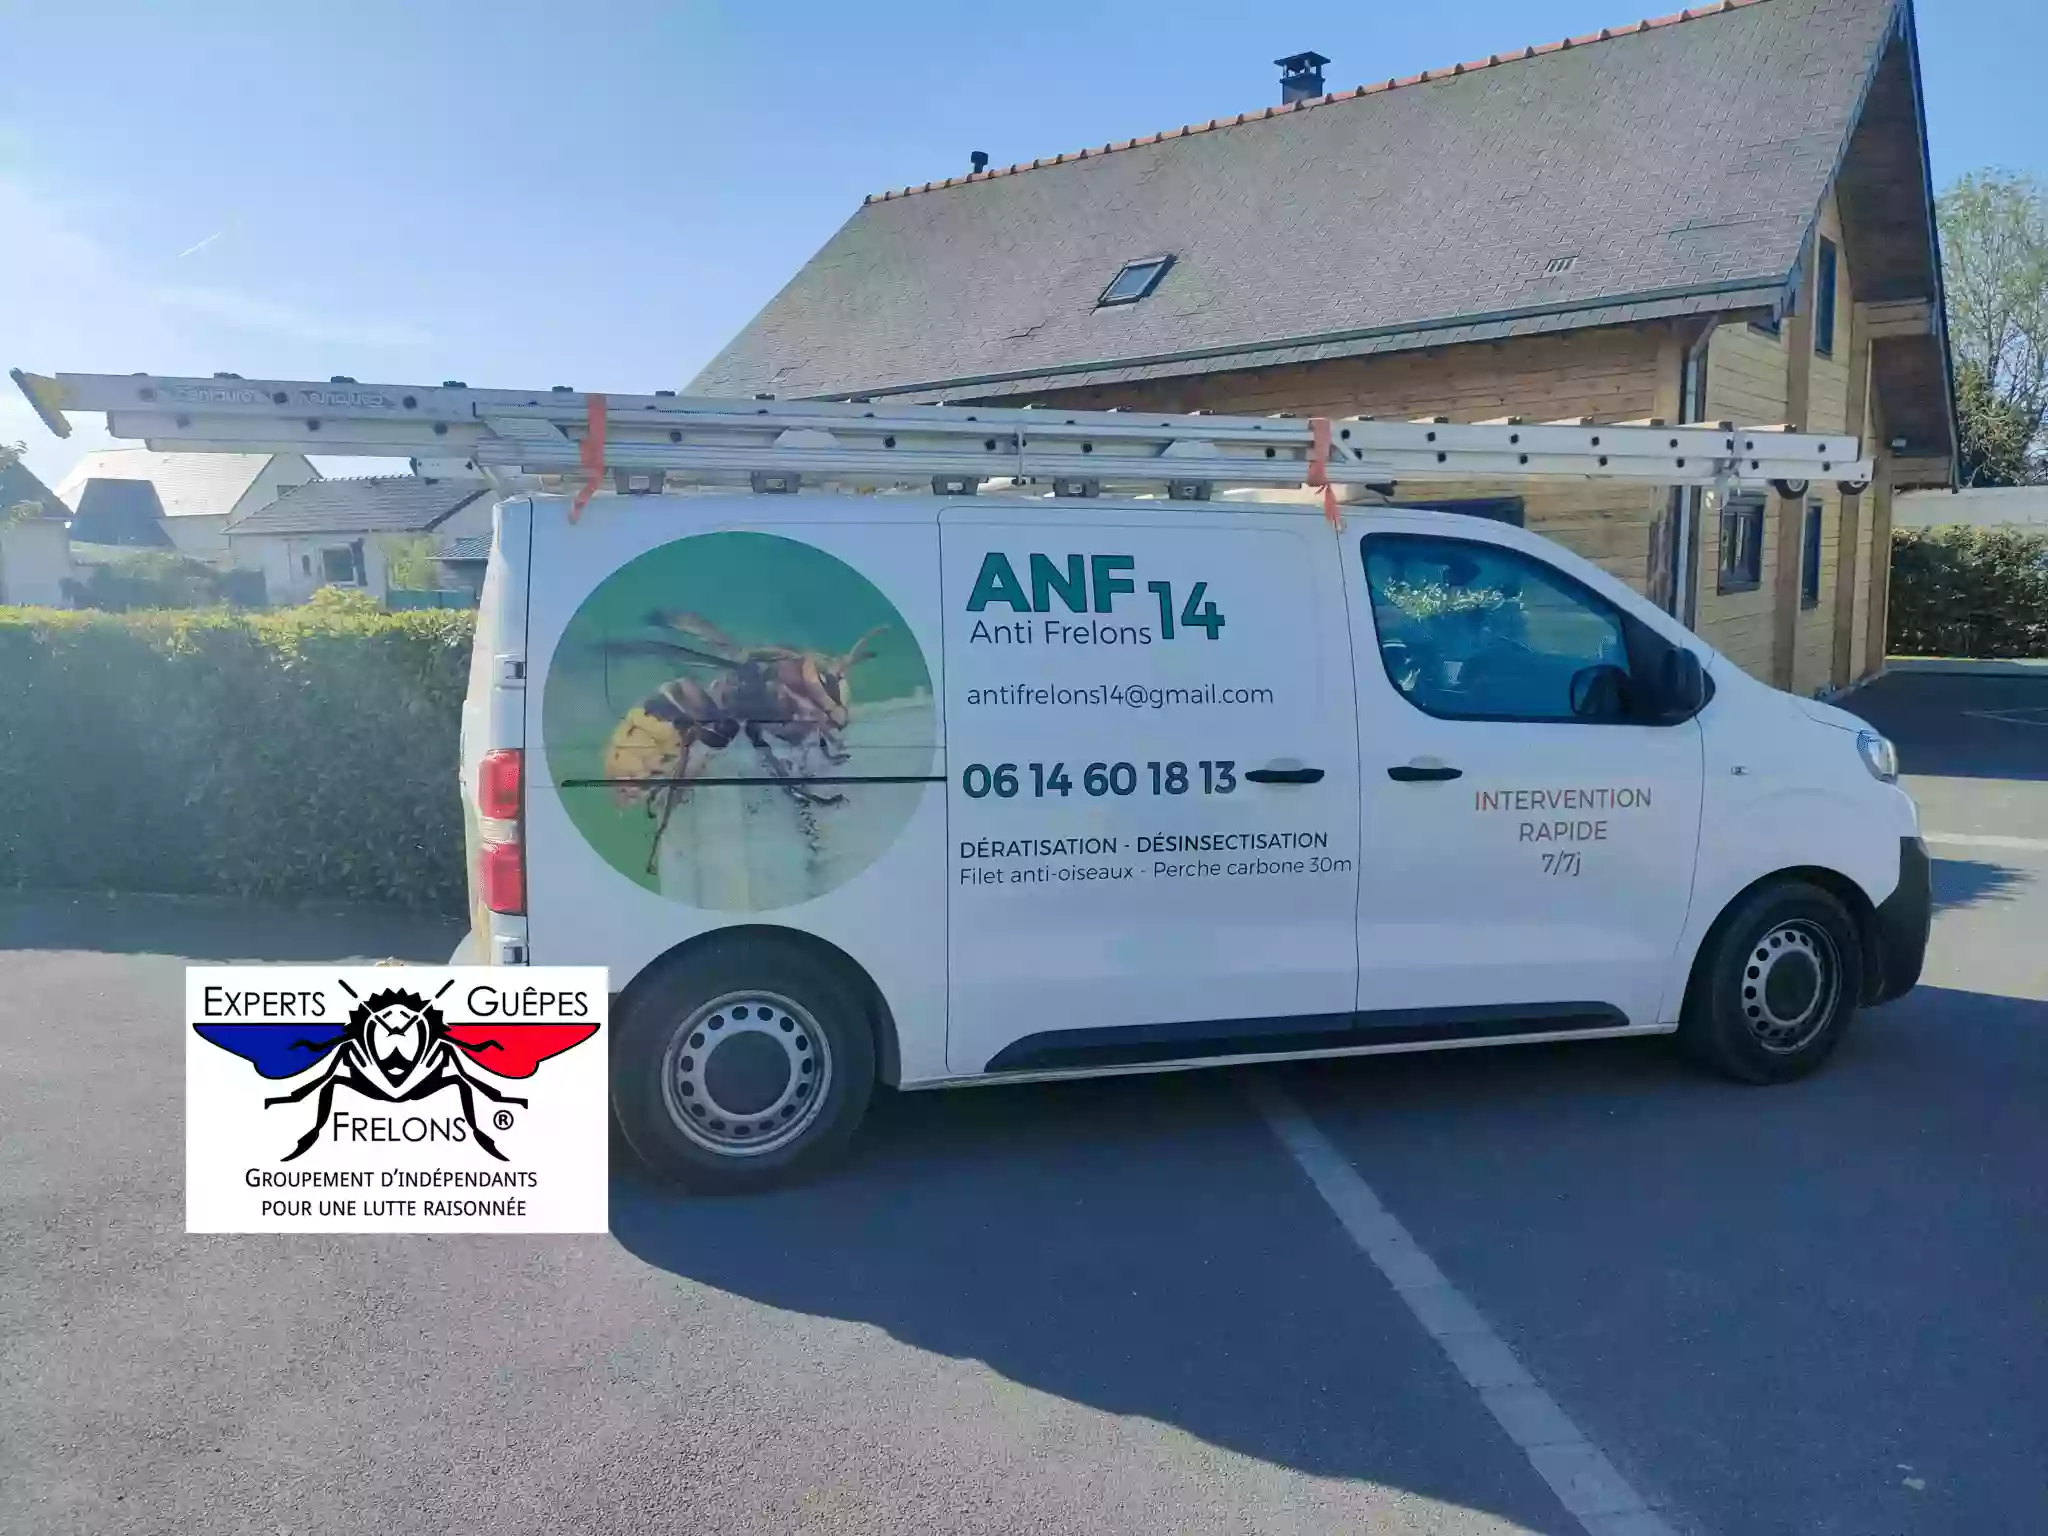 ANF 14 - Entreprise de dératisation et désinsectisation anti-nuisible - Calvados Normandie